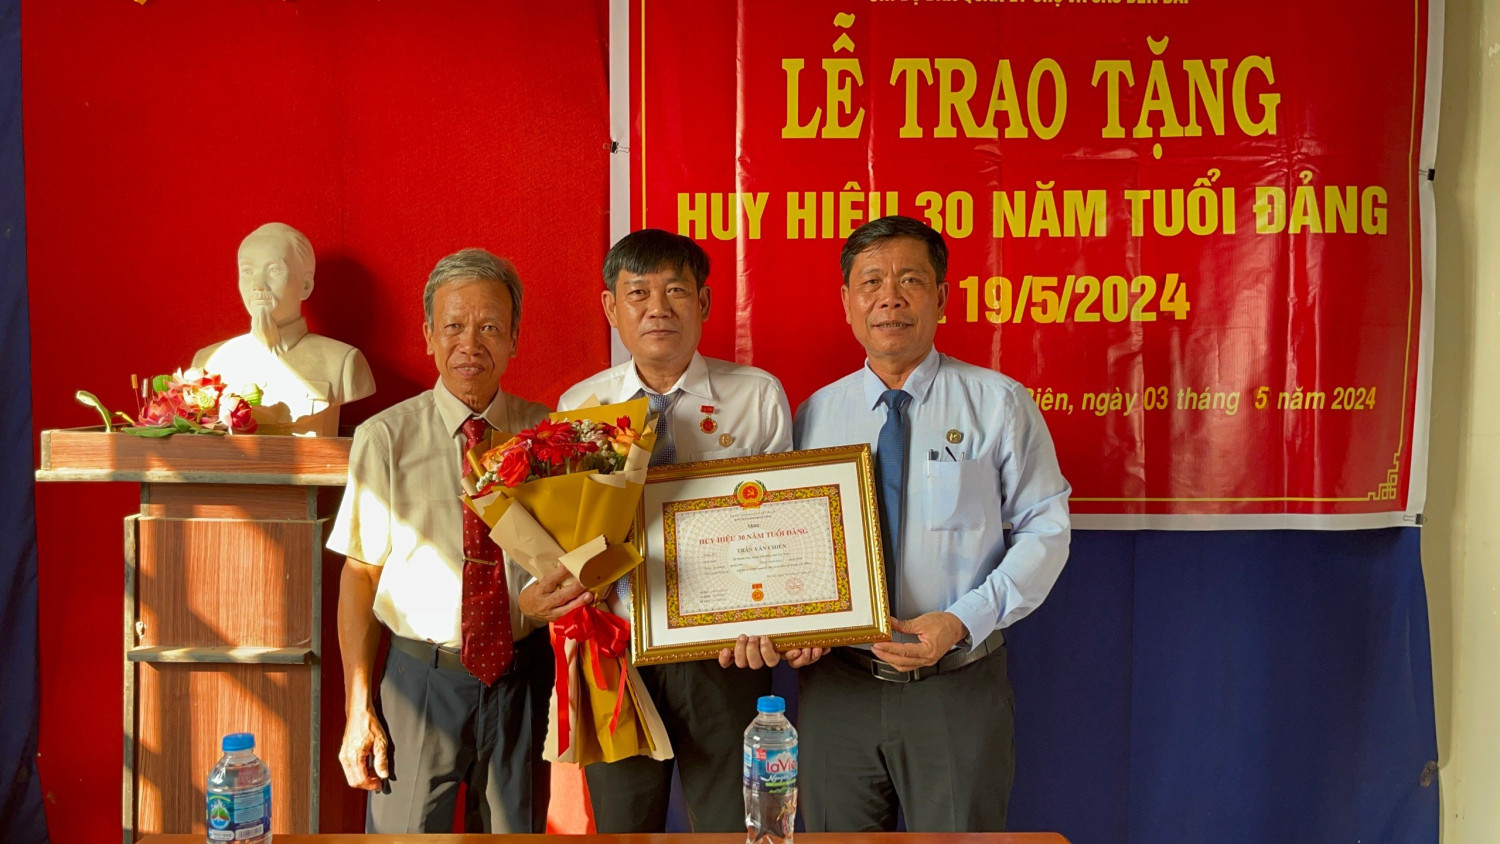 Tân Biên Trao huy hiệu 30 năm tuổi đảng cho đảng viên thuộc Chi bộ Ban Quản lý chợ và các bến bãi